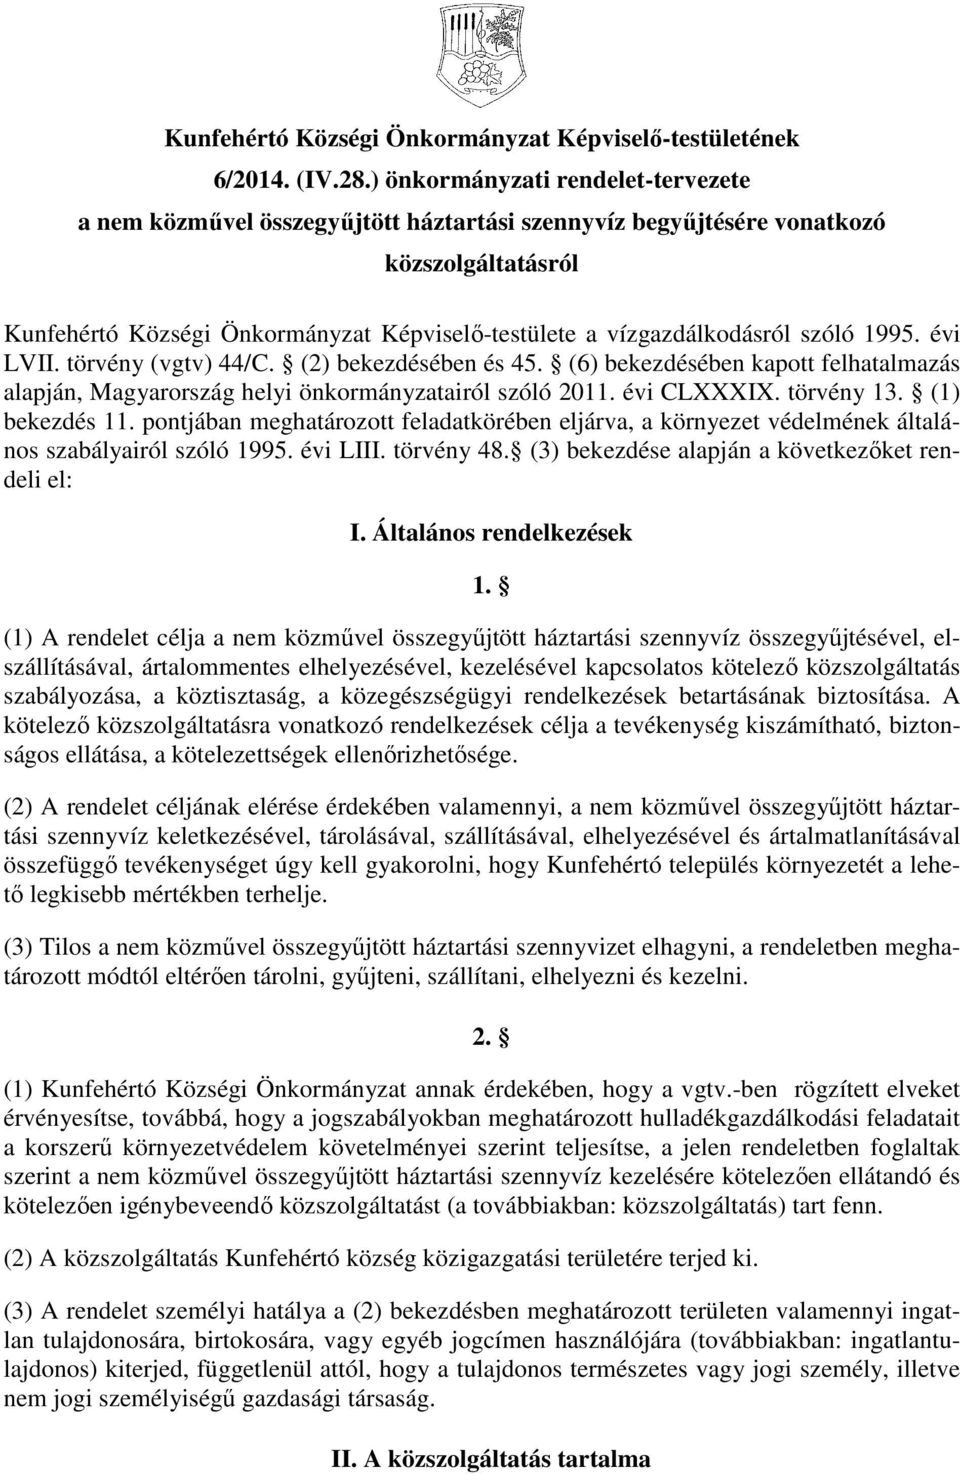 szóló 1995. évi LVII. törvény (vgtv) 44/C. (2) bekezdésében és 45. (6) bekezdésében kapott felhatalmazás alapján, Magyarország helyi önkormányzatairól szóló 2011. évi CLXXXIX. törvény 13.